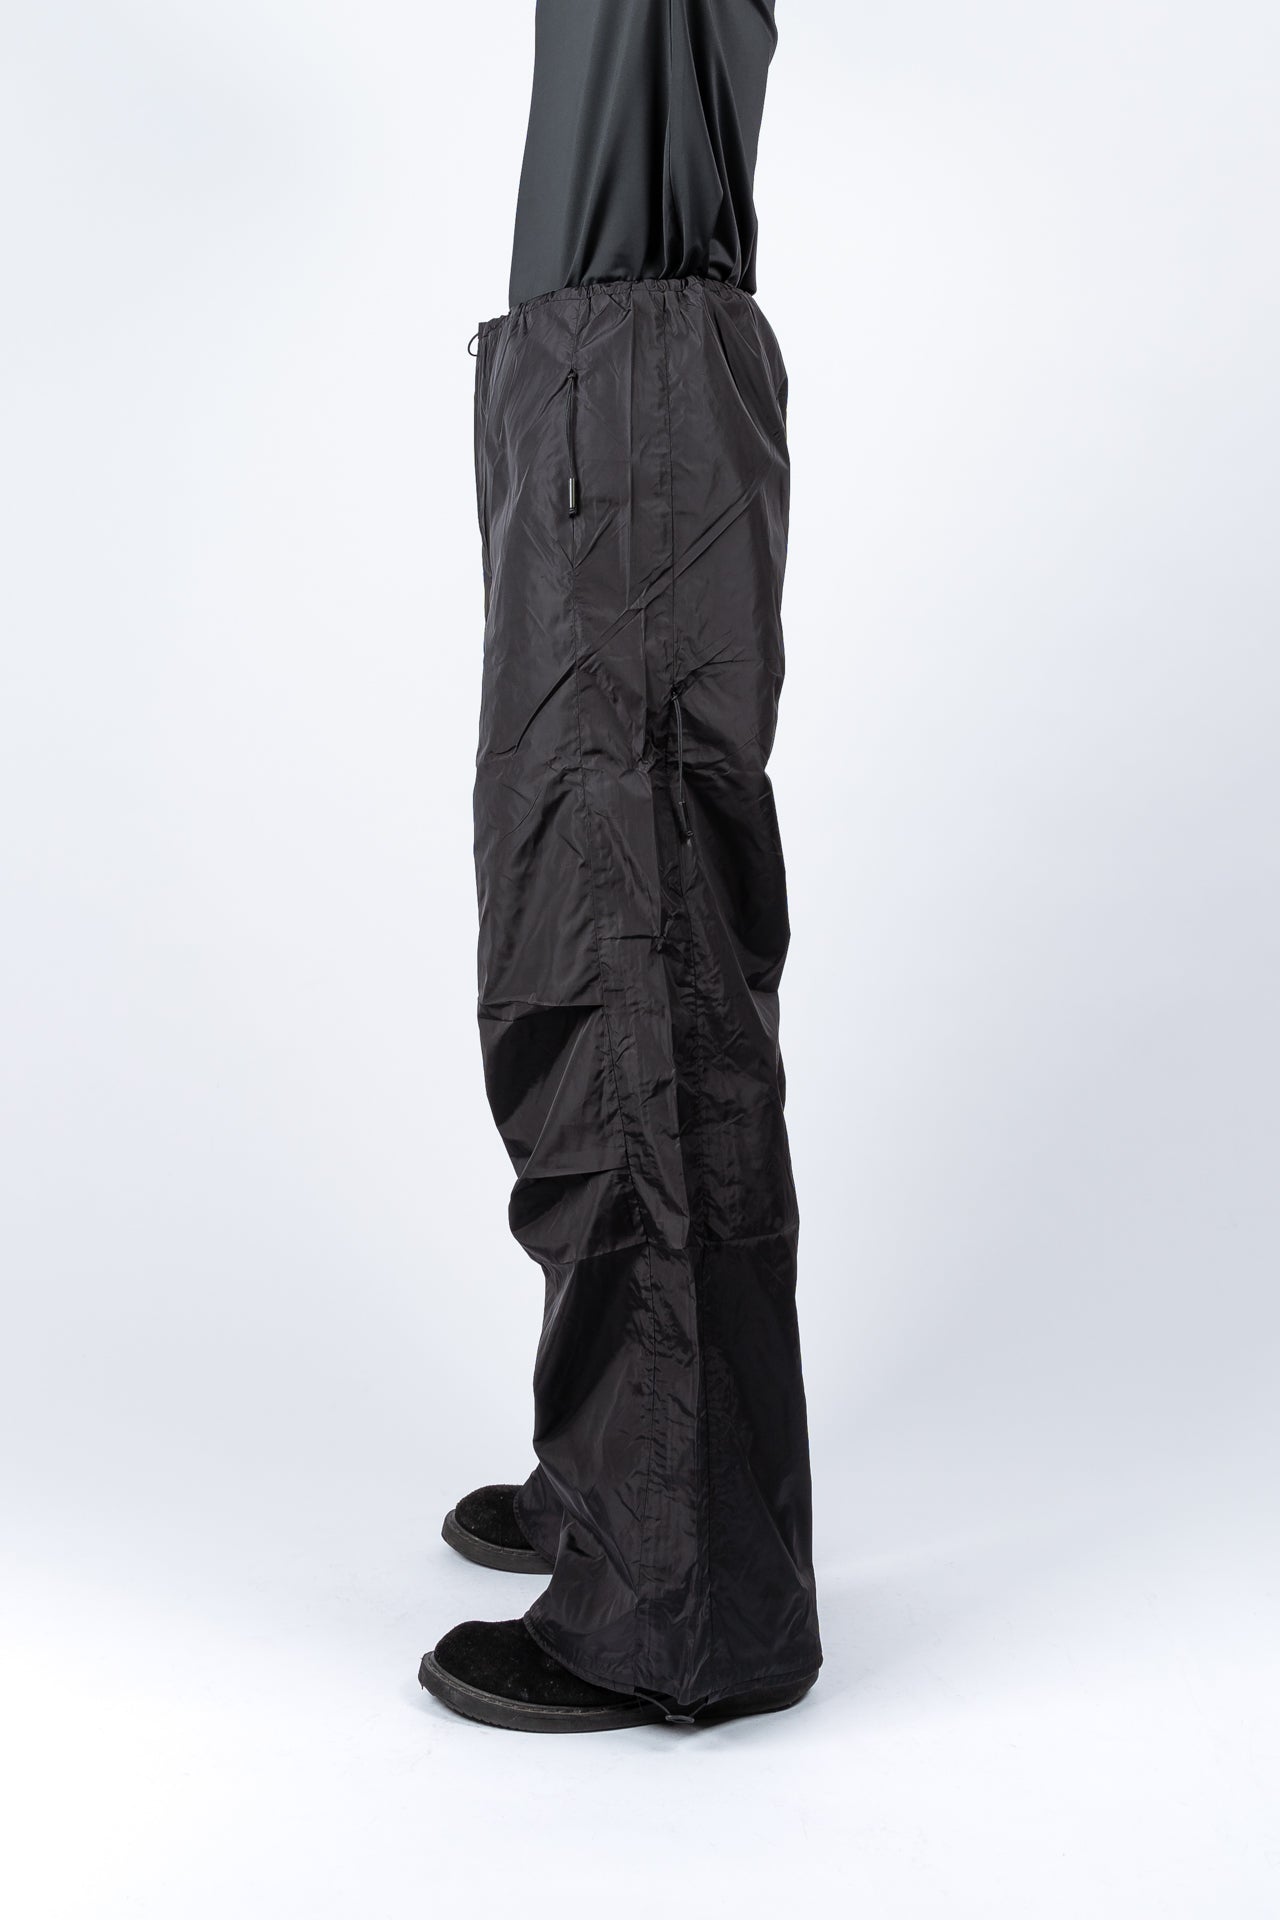 Pantalones parachute Color gris oscuro - HOUSE - 7359Y-90X